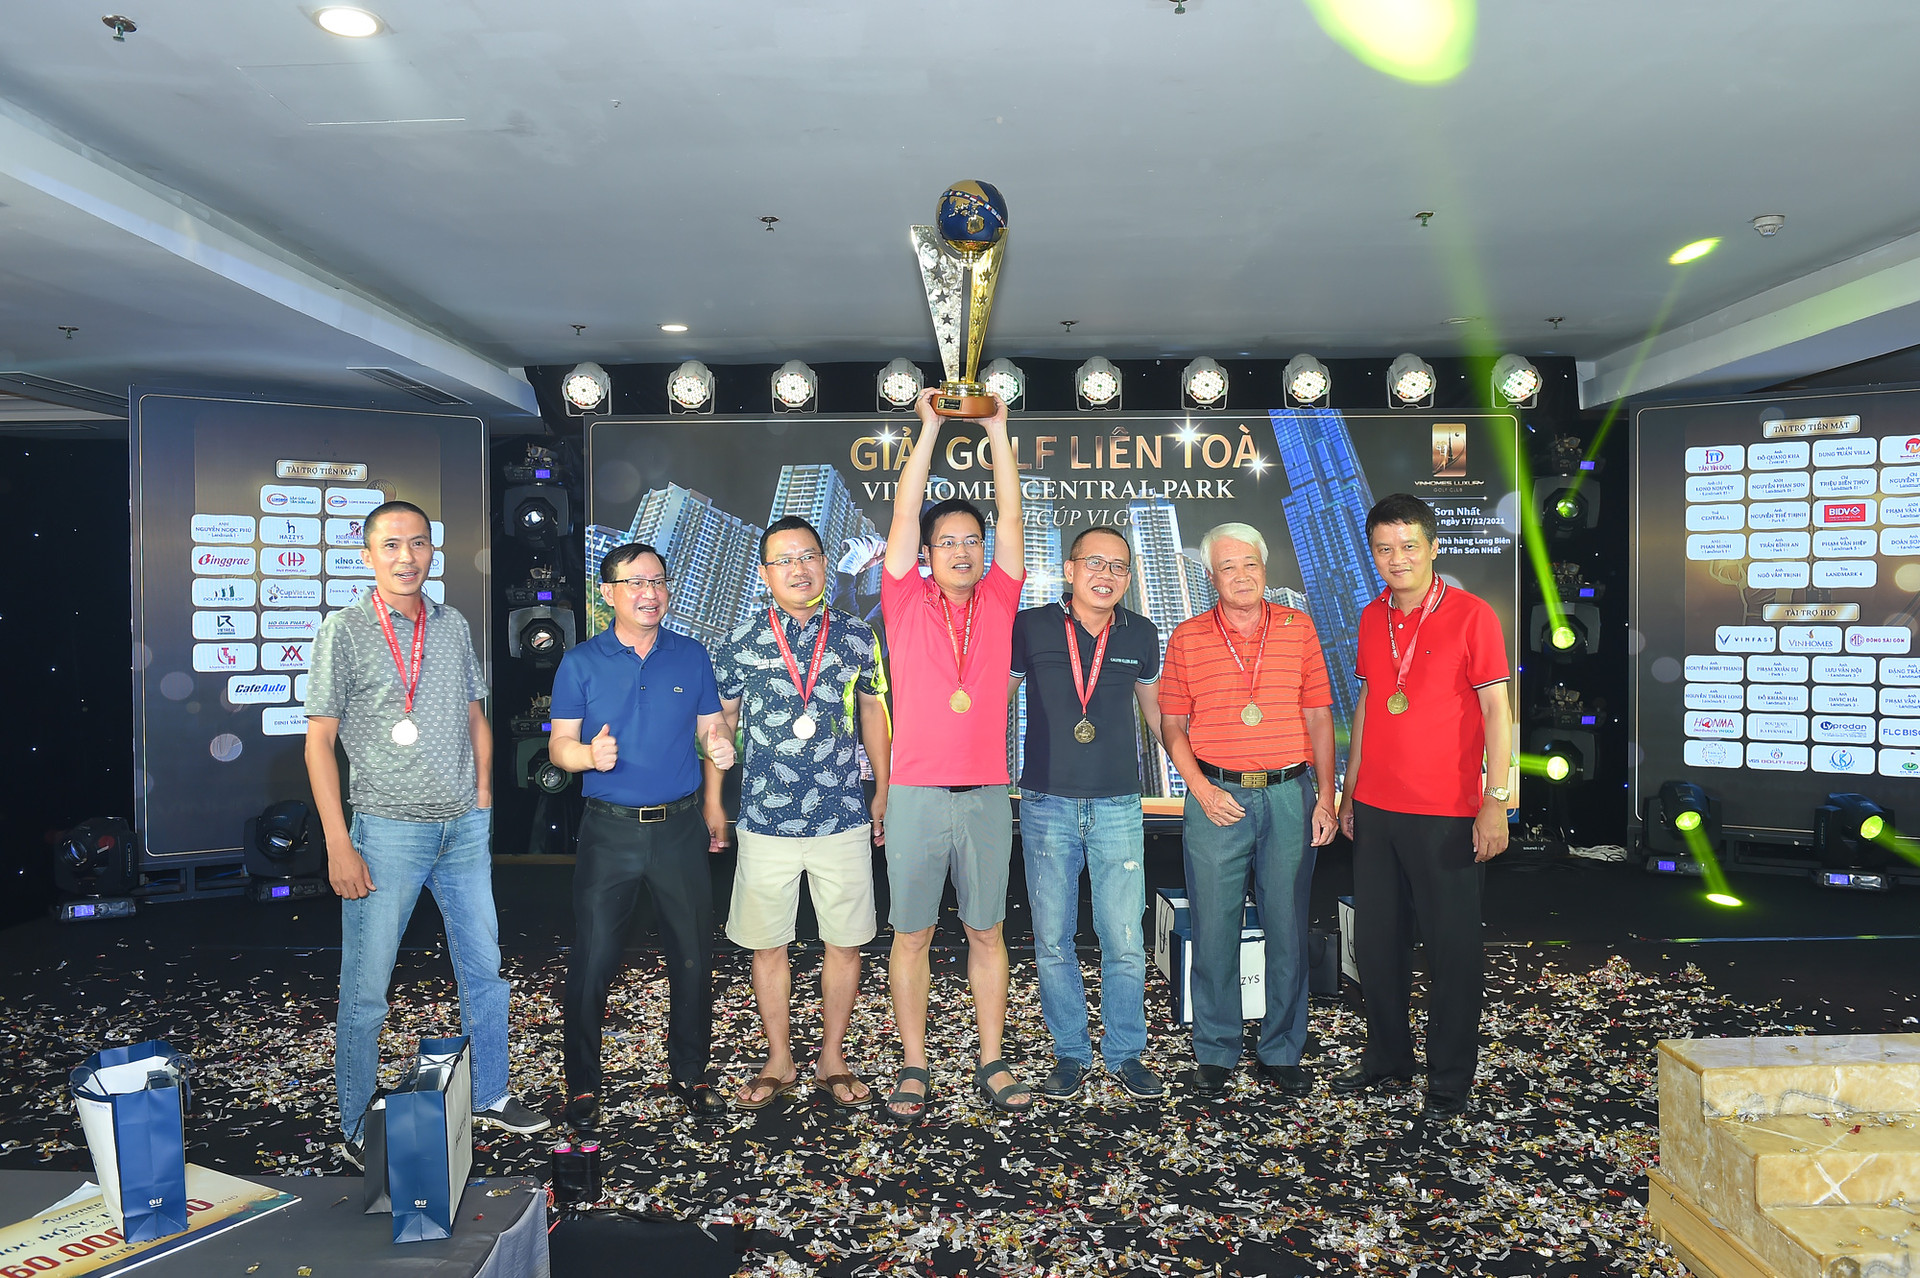 Golfer Andrew Hùng Phạm và Đội tuyển Park 2 giành cúp tại Giải golf Liên Tòa Nhà Vinhomes Central Park Tranh cúp Vô Địch VLGC - Ảnh 4.